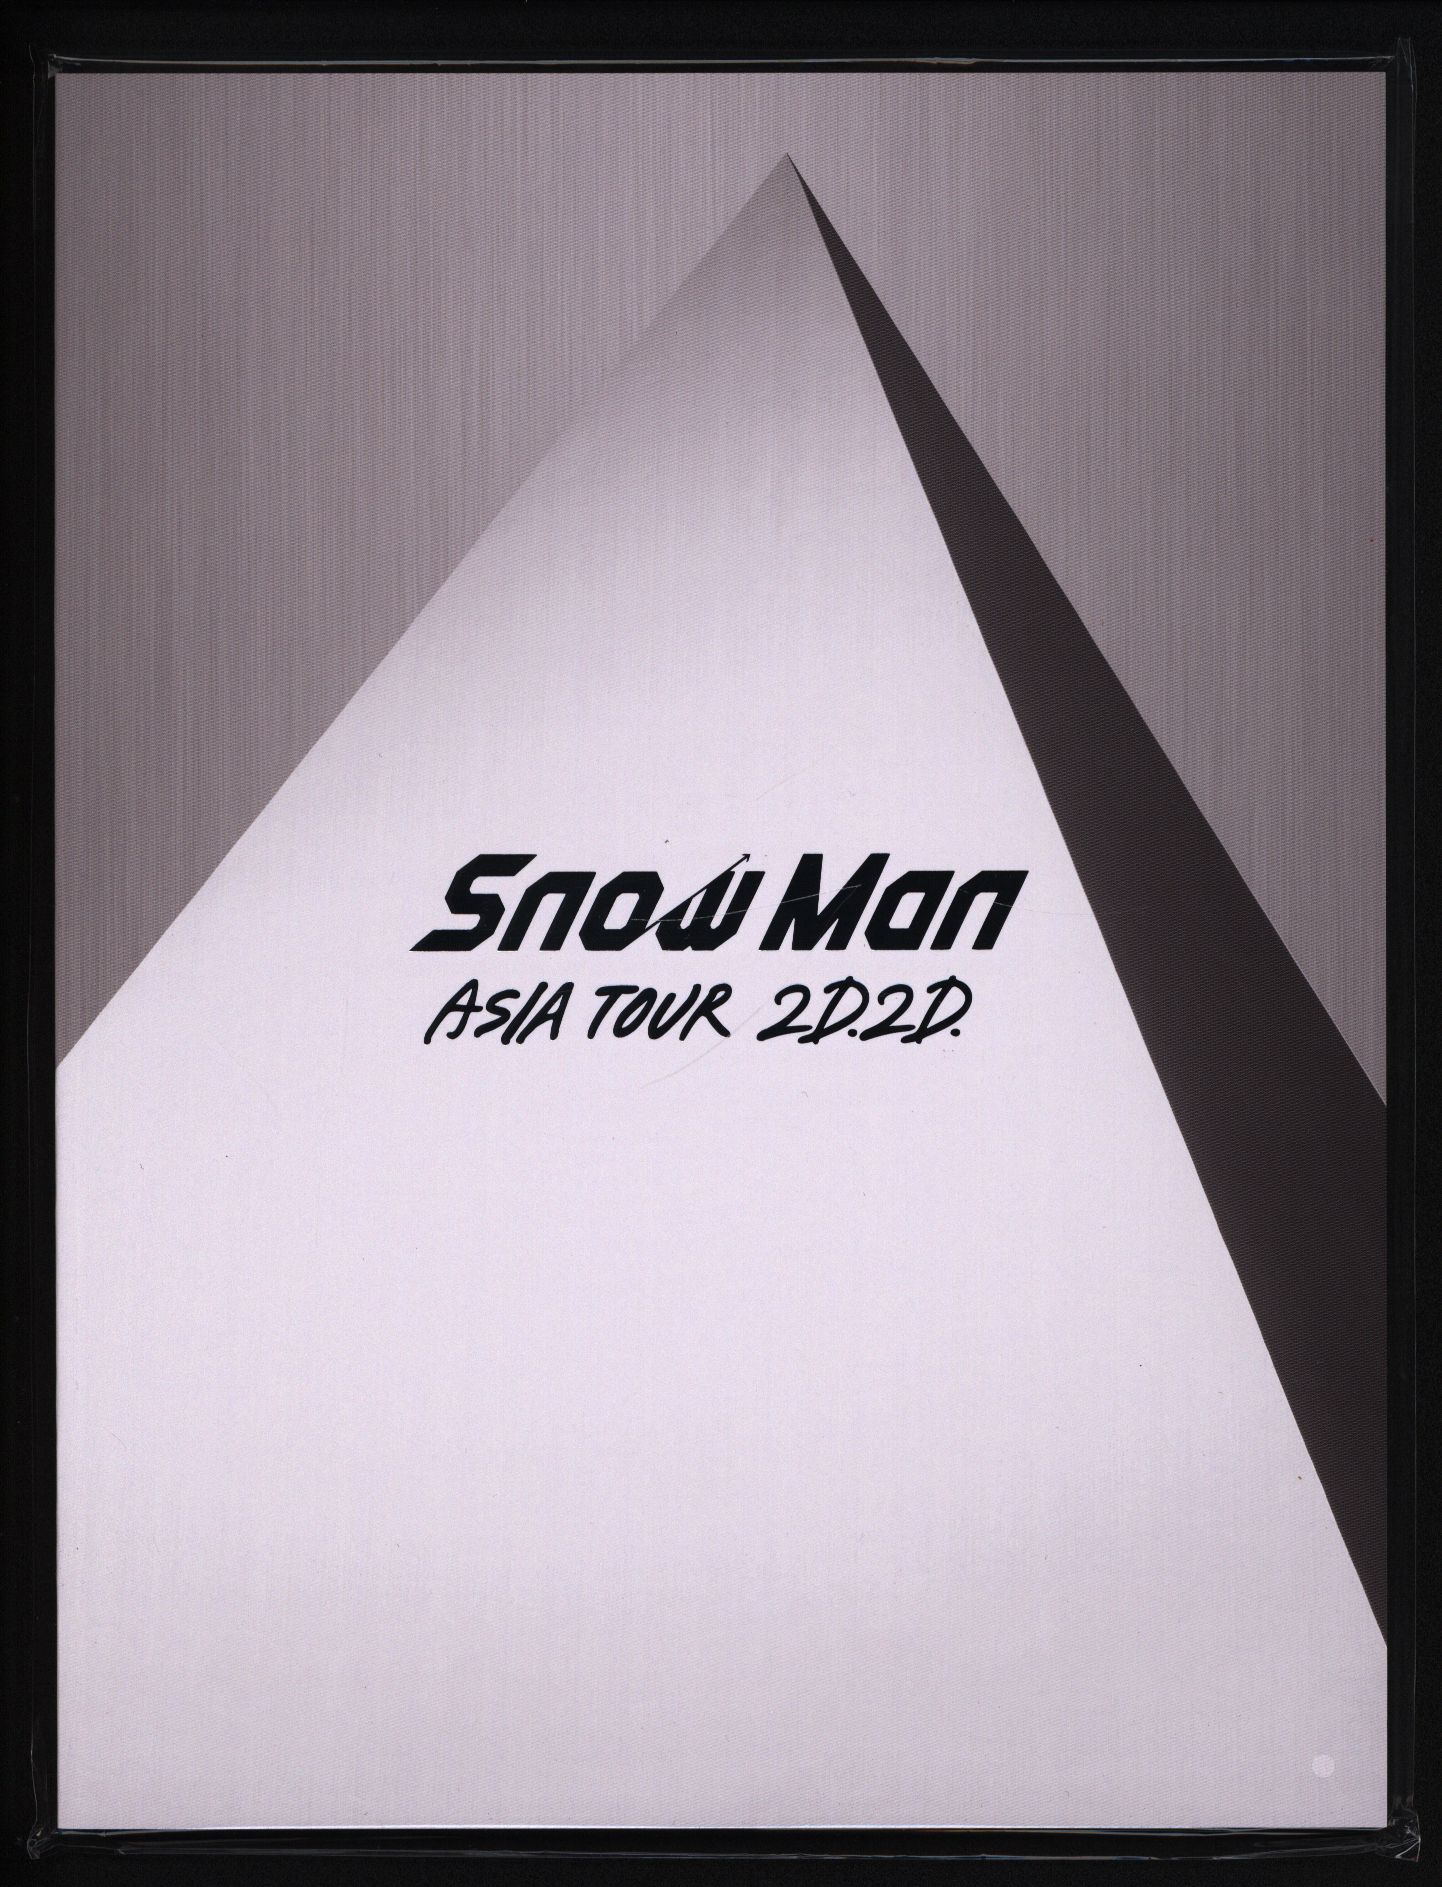 Snow Man 20年 2D.2D. パンフレット | まんだらけ Mandarake